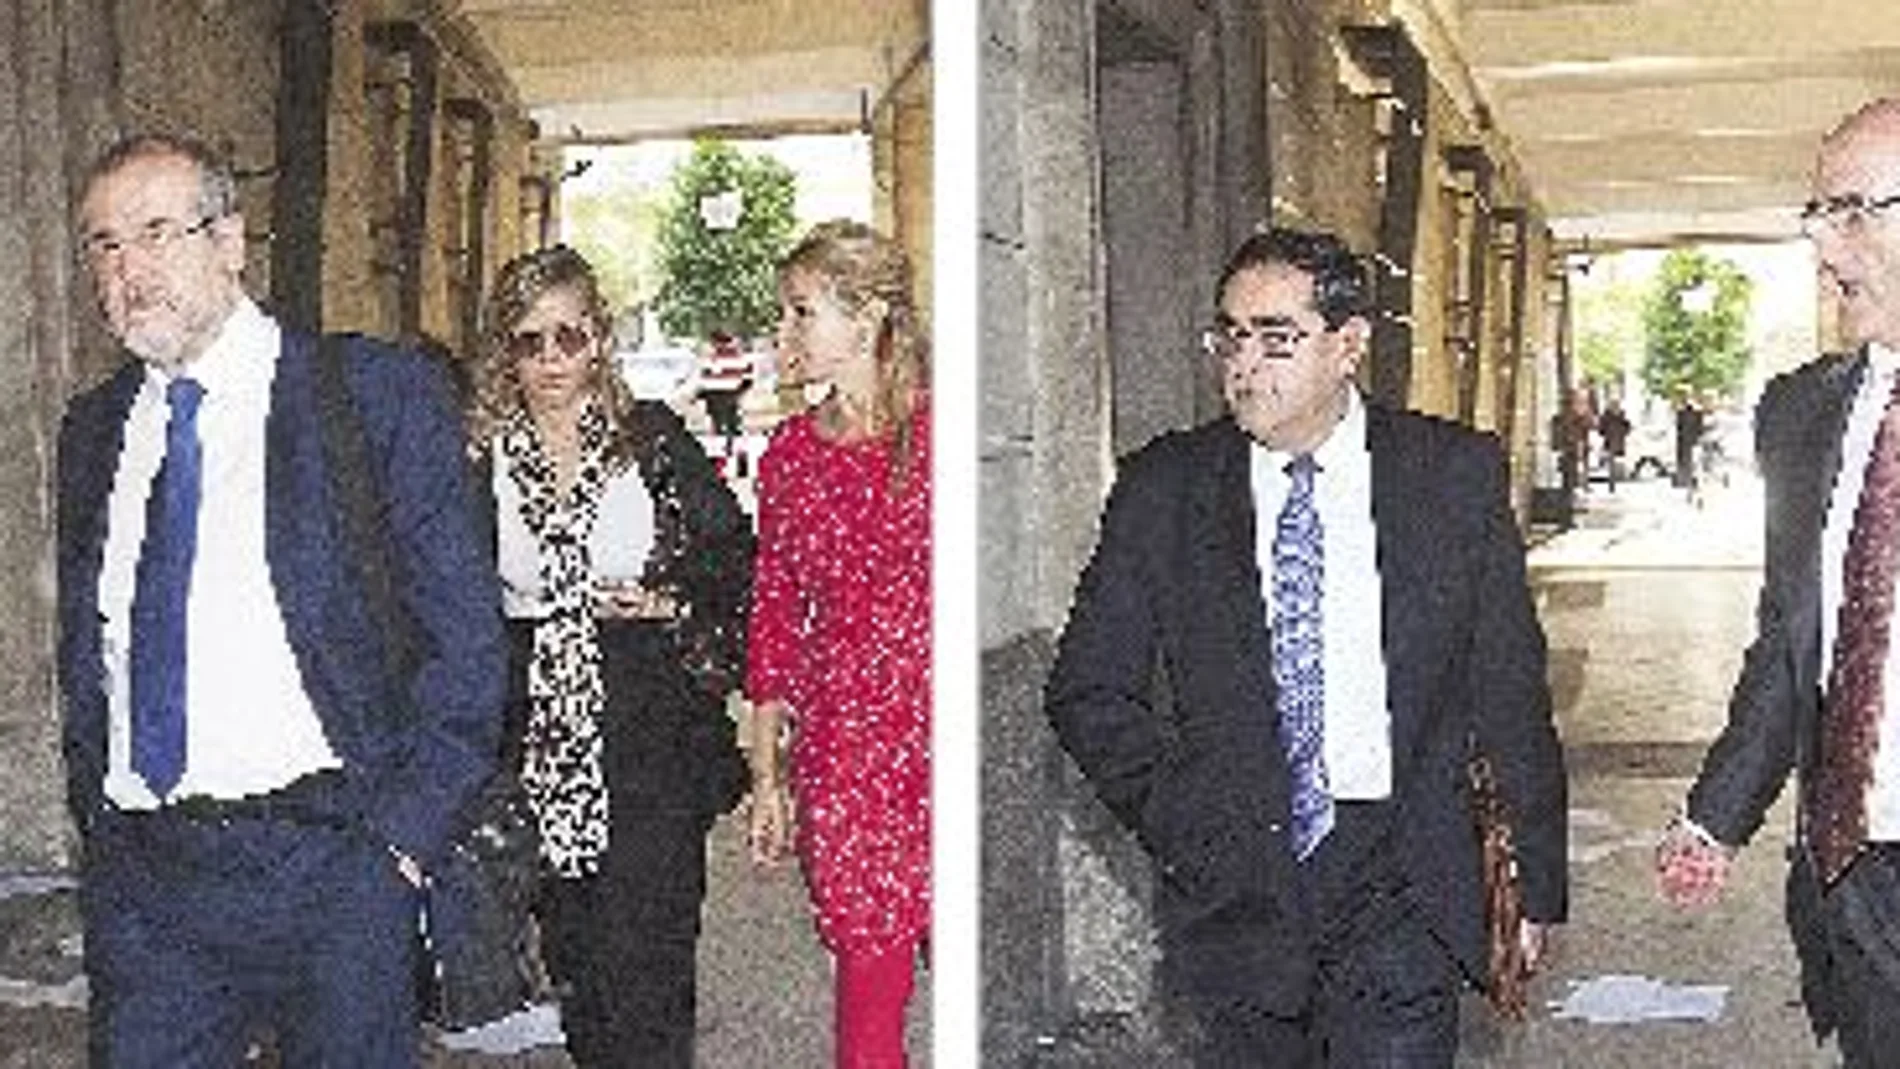 El juez de Instrucción número 16 de Sevilla tomó declaración ayer a Juan Vela Quiroga y Ramón Martín López